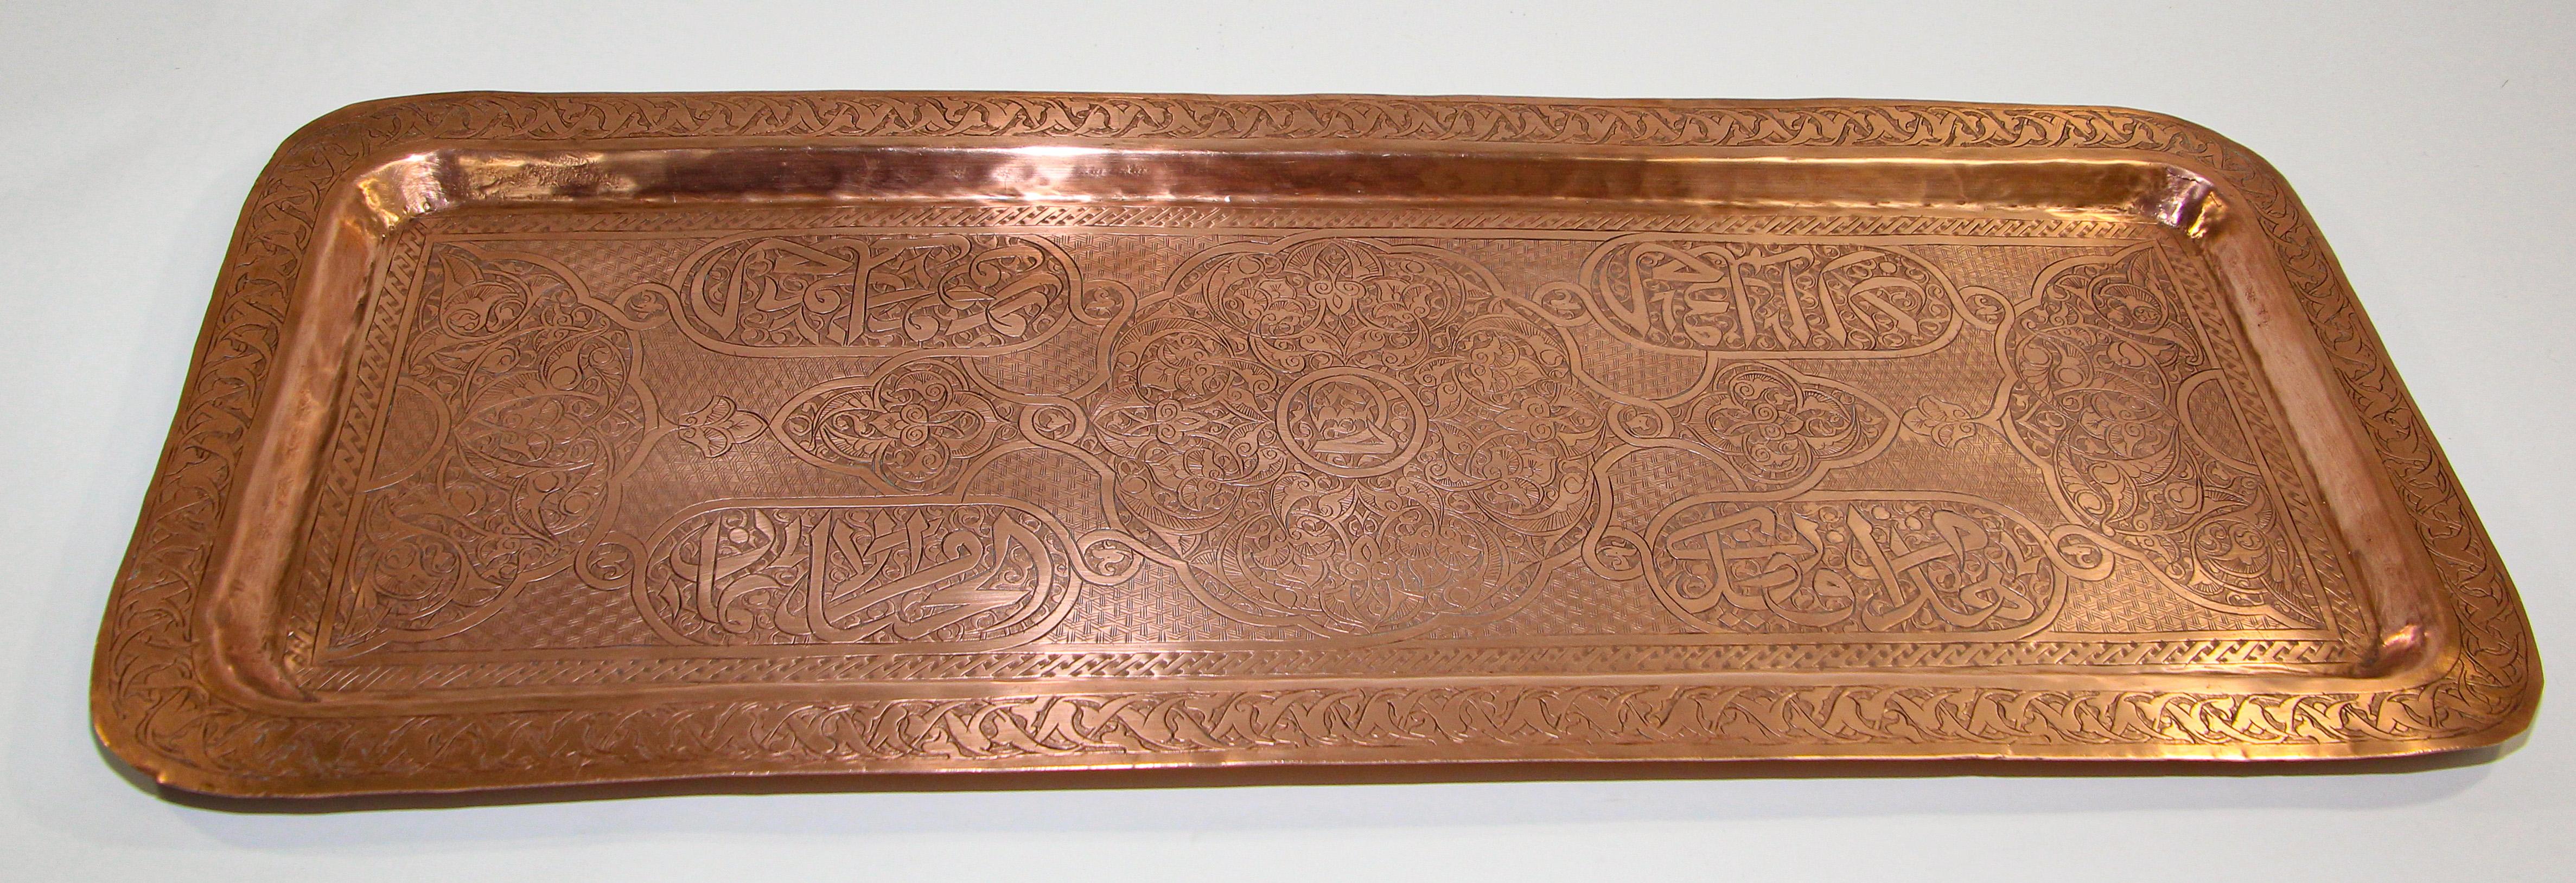 Antike Mamluk Wiederbelebung Indo Persian Damascene islamischen Nahen Osten Arabisch Kupfer Tablett Ladegerät.
Rechteckige Servierplatte aus massivem, gehämmertem Kupfer, graviert und fein verziert mit geometrischen, maurischen, fein geätzten